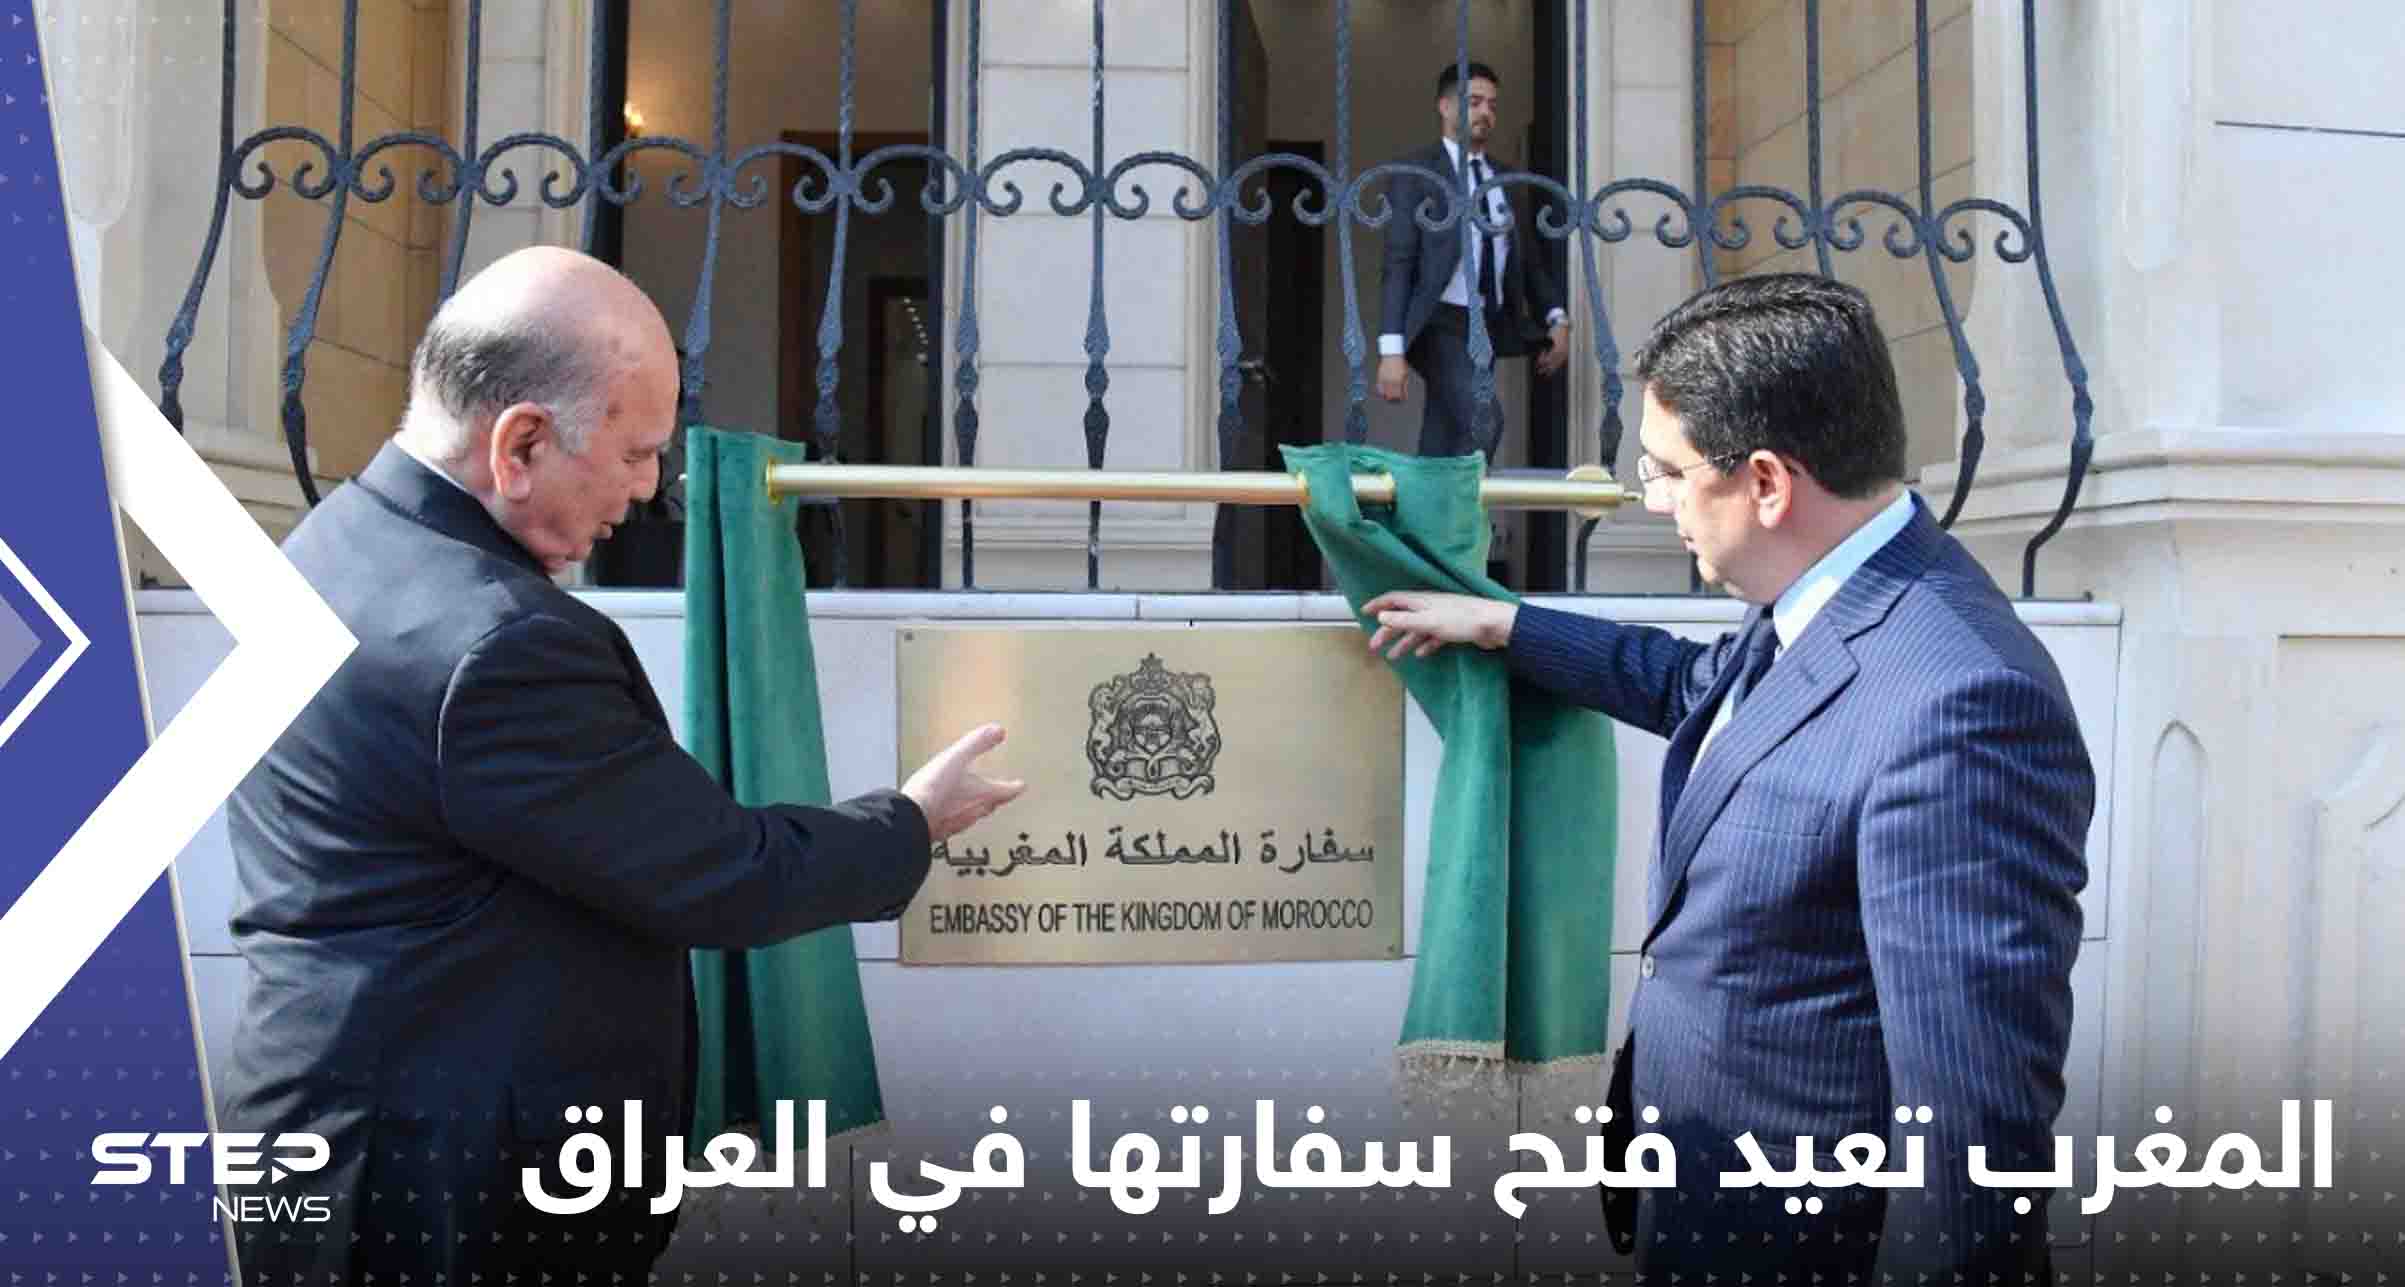 شاهد|| المغرب تعيد فتح سفارتها في العراق بعد 18 سنة من قطع العلاقة بين البلدين